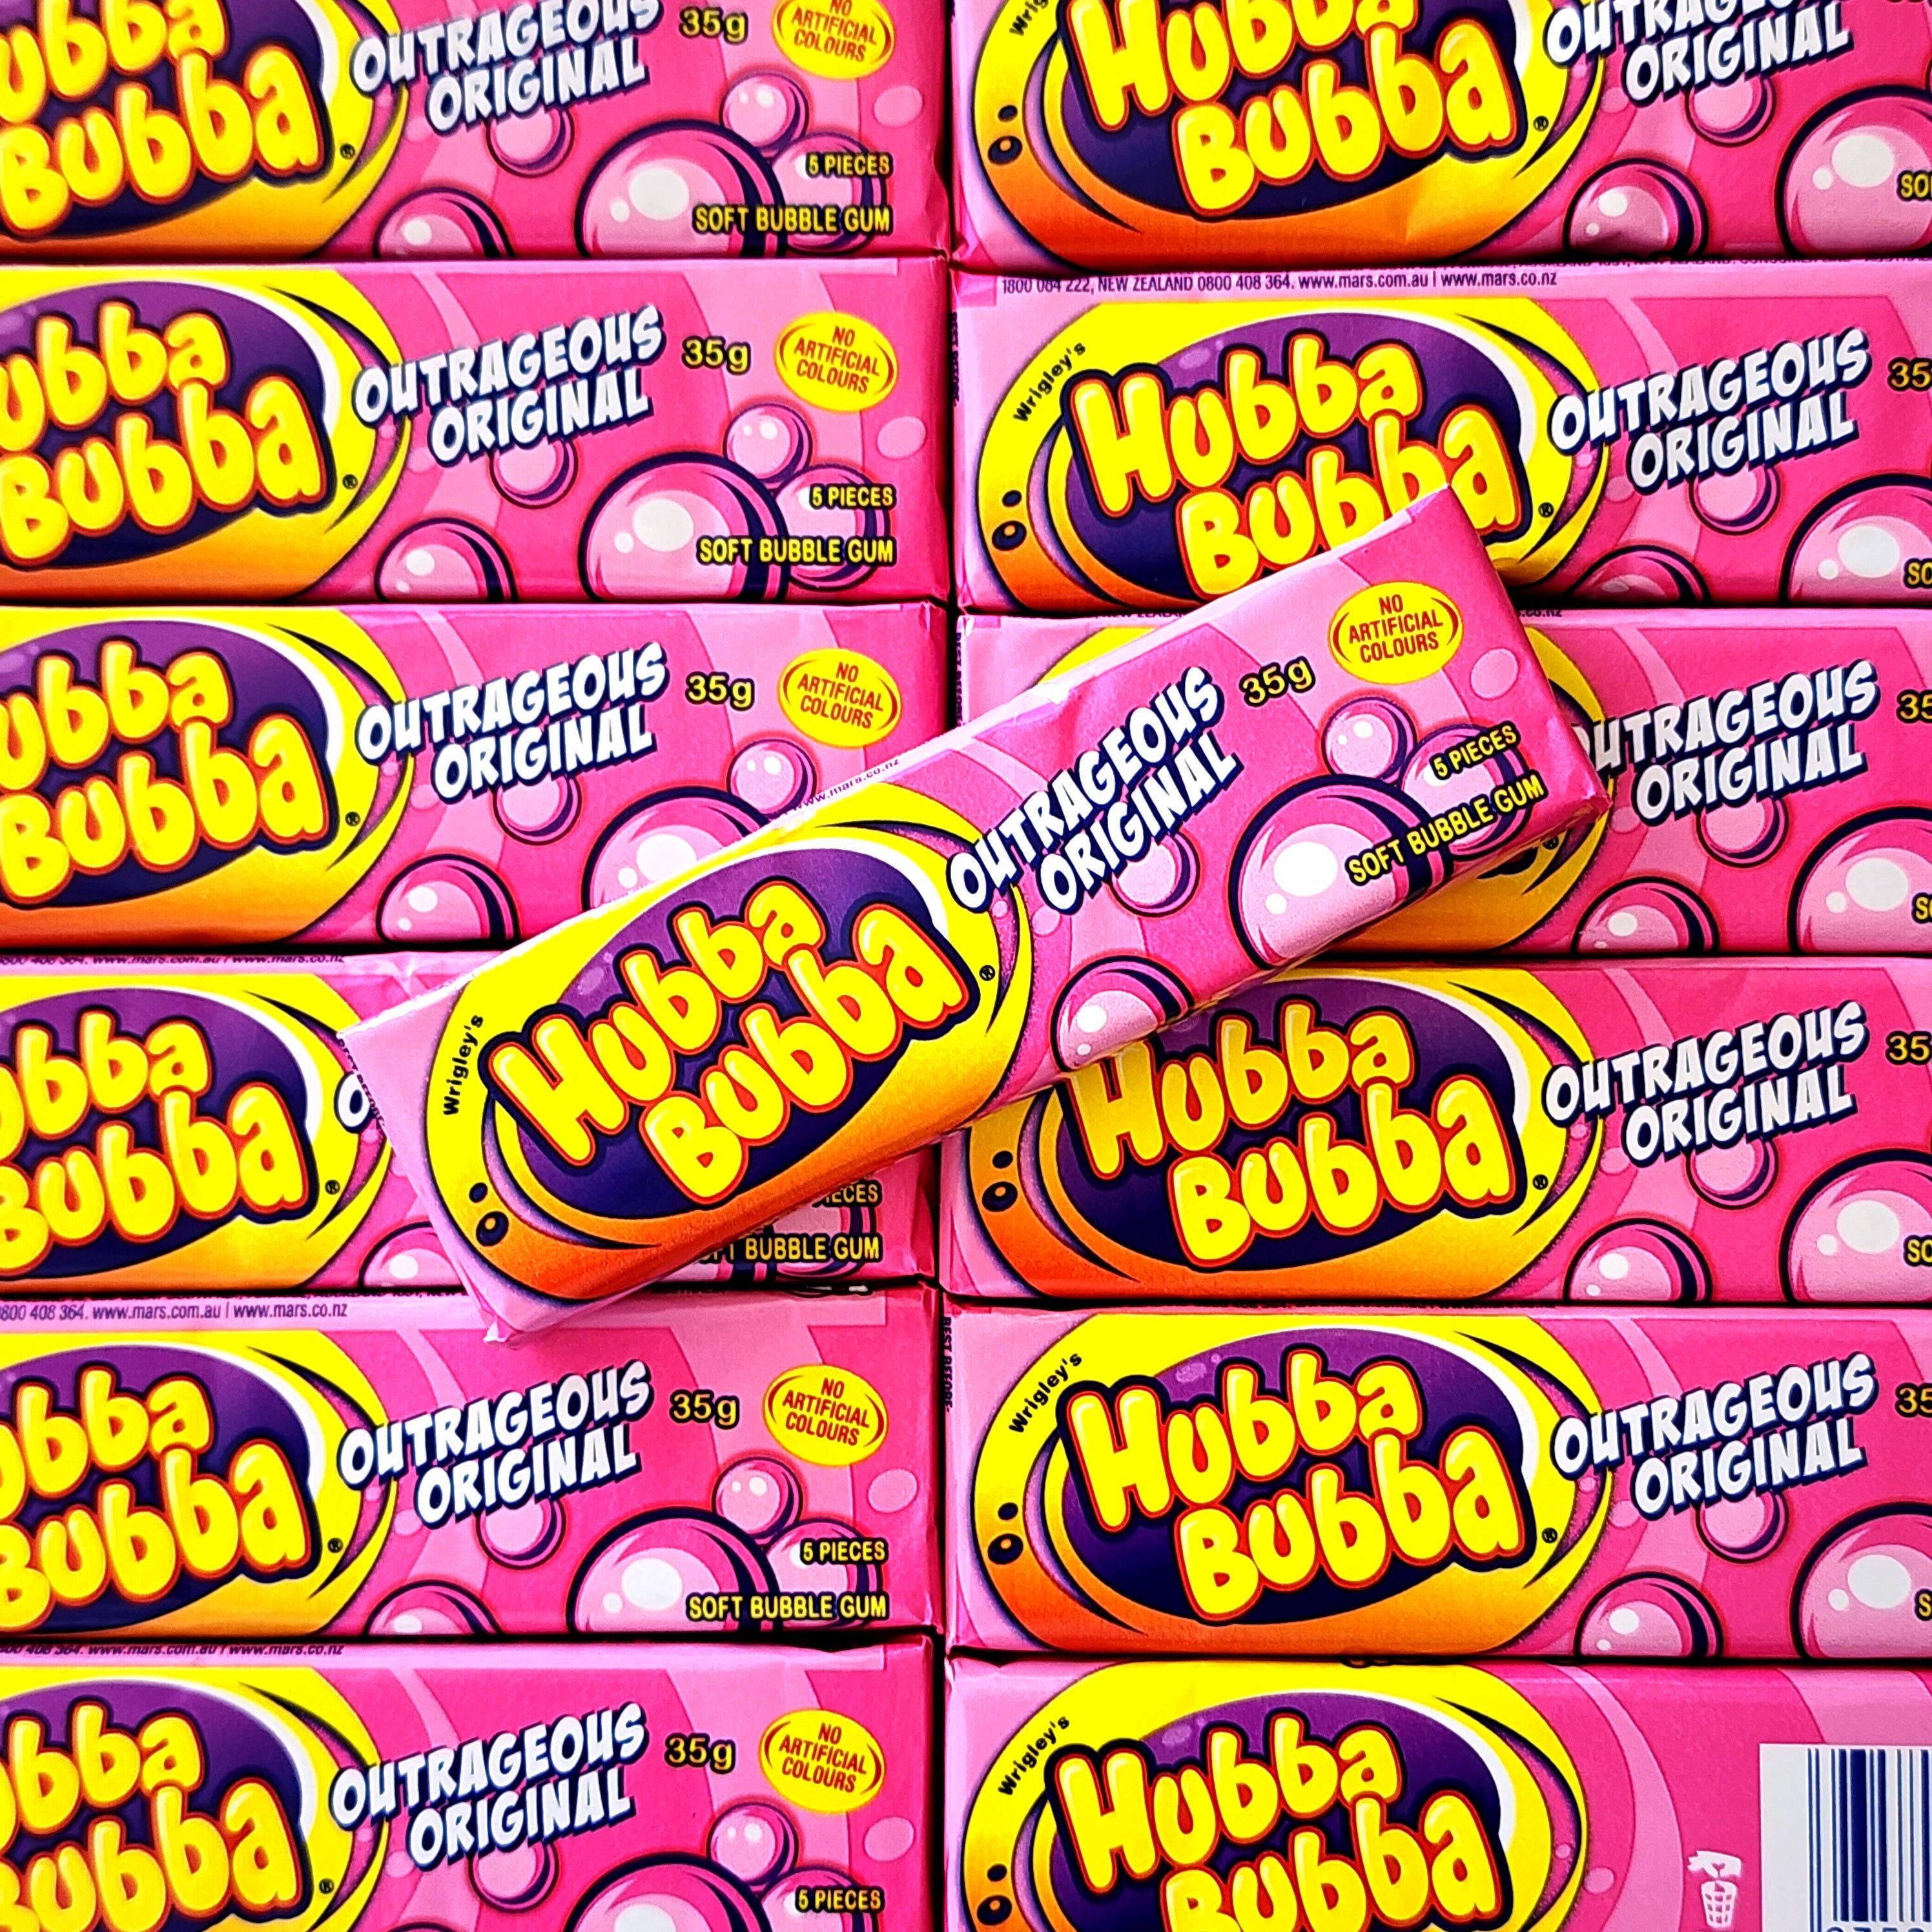 Hubba Bubba Gum - Outrageous Original - Pik n Mix Lollies NZ